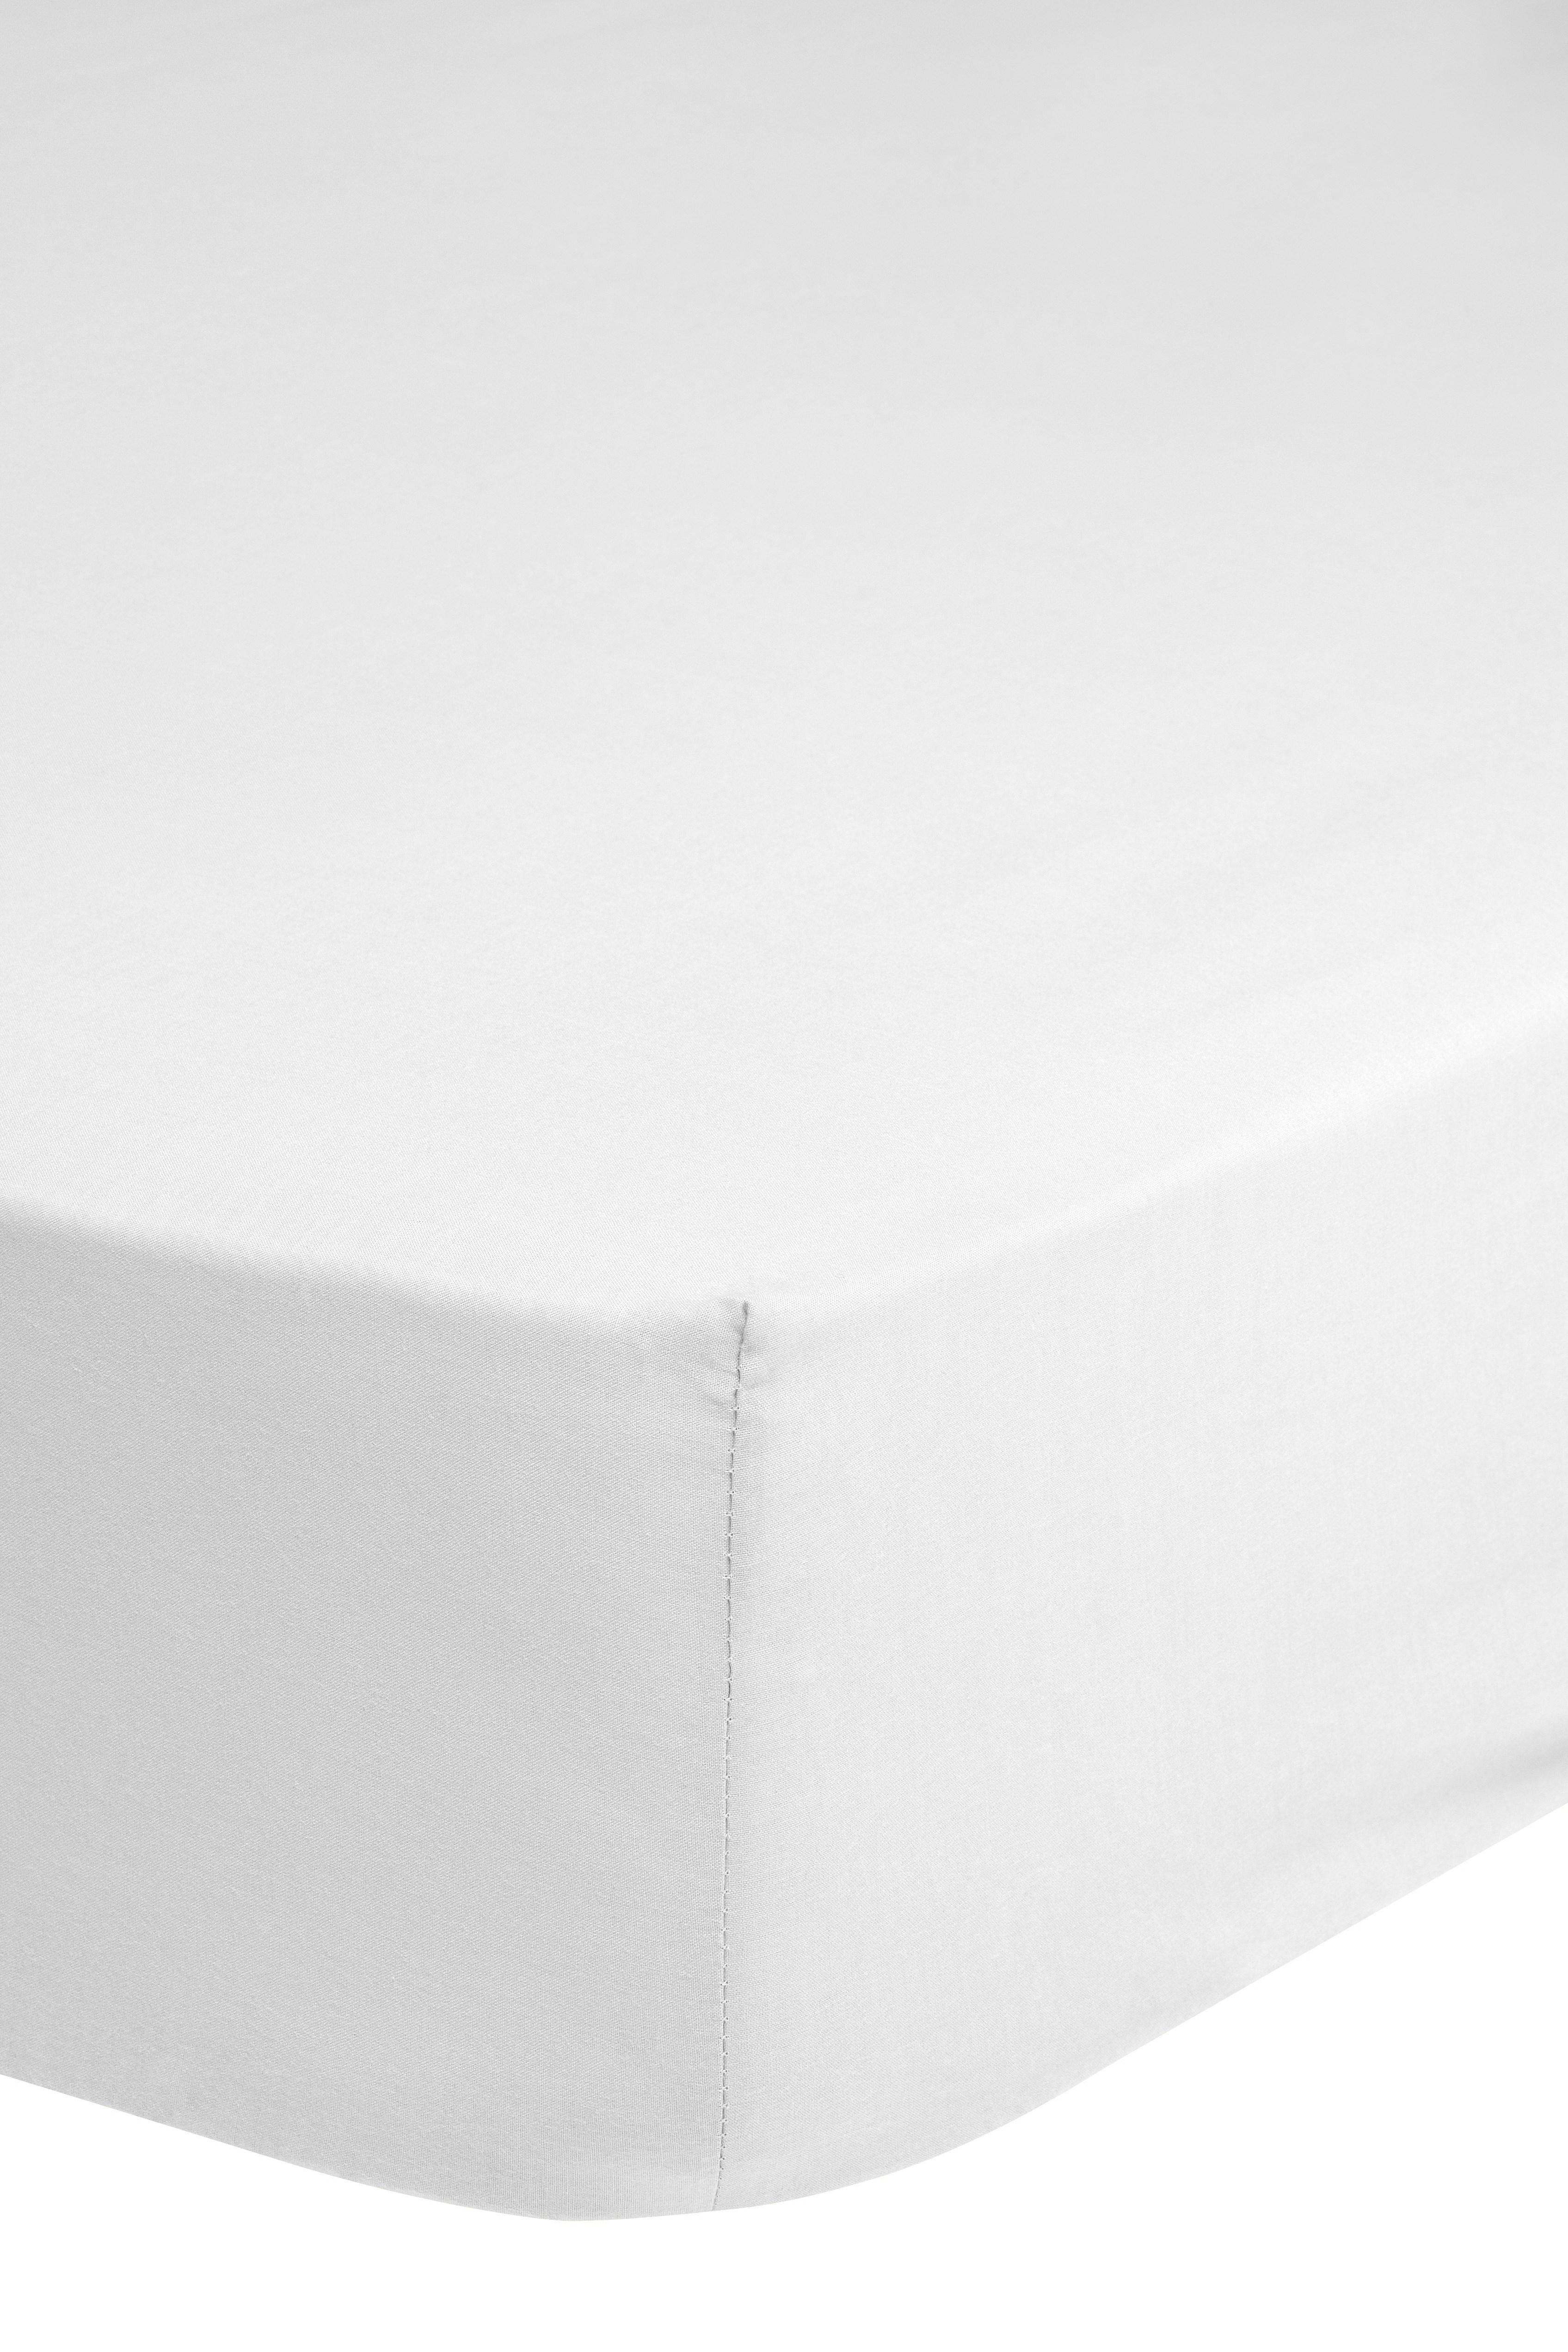 Elastické Prostěradlo Satin Ca. 90x220cm - bílá, Basics, textil (90/220cm) - MID.YOU